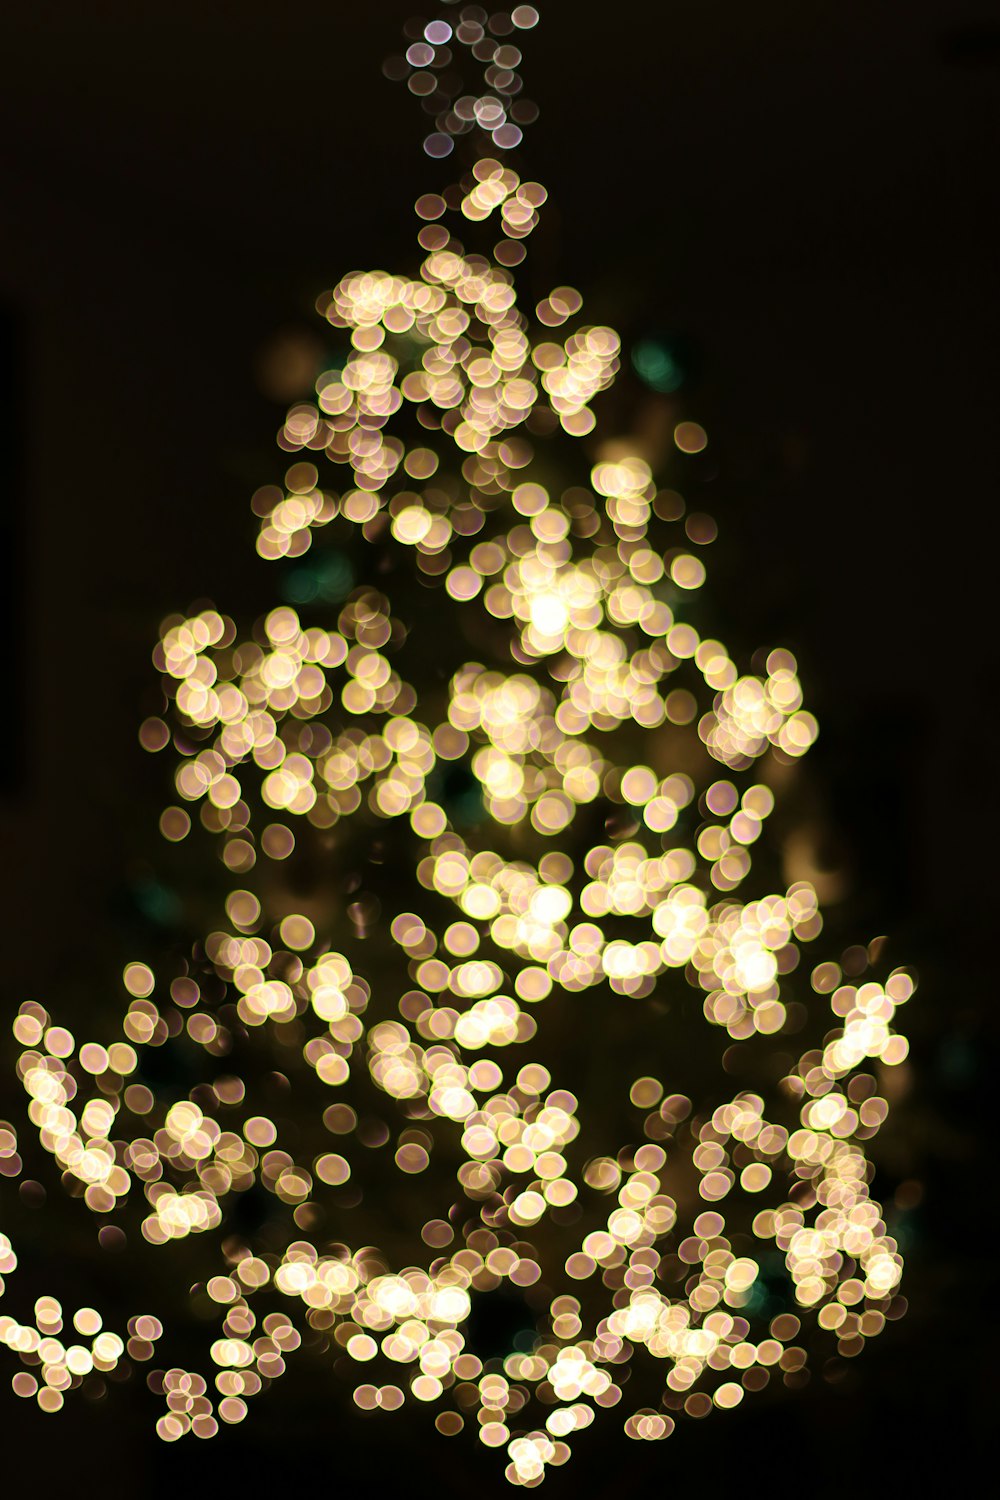 Un albero di Natale illuminato al buio